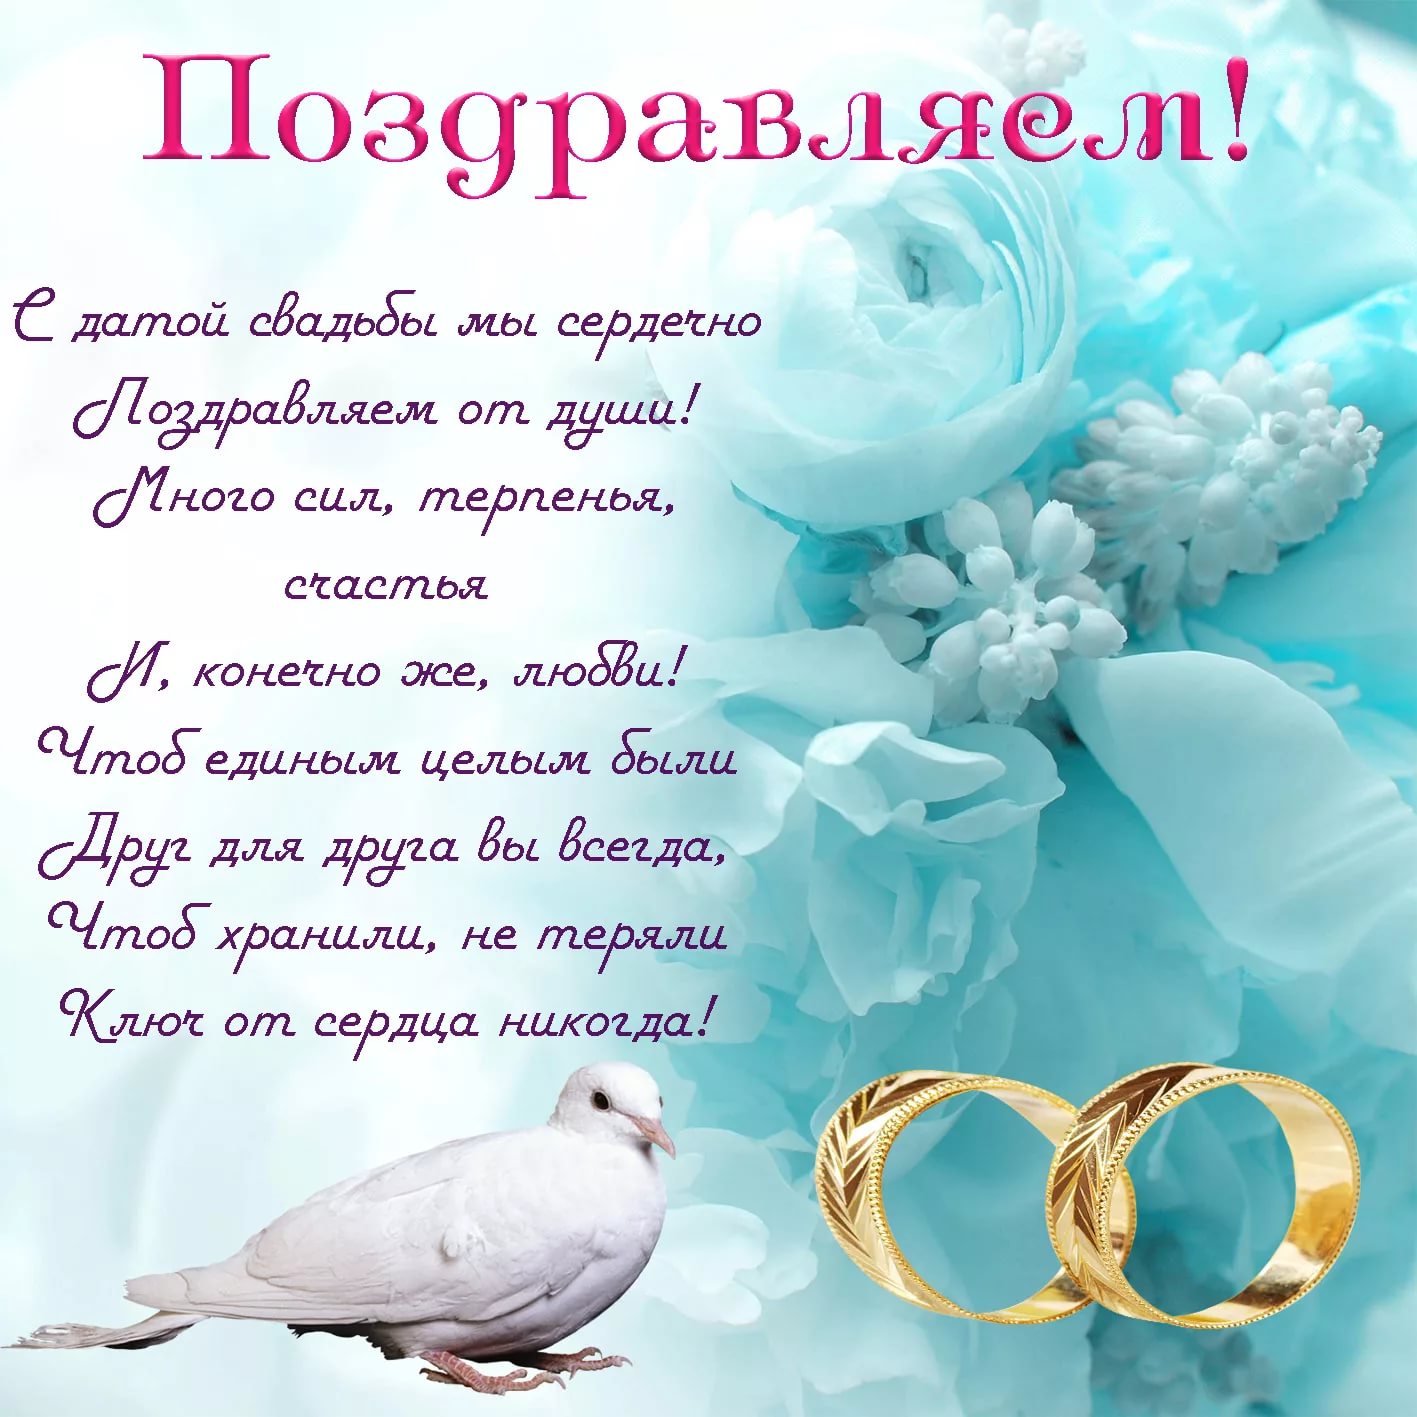 ᐉ поздравление с 10 летием свадьбы своими словами. поздравления с днем свадьбы (10 лет) в стихах и прозе - svadba-dv.ru